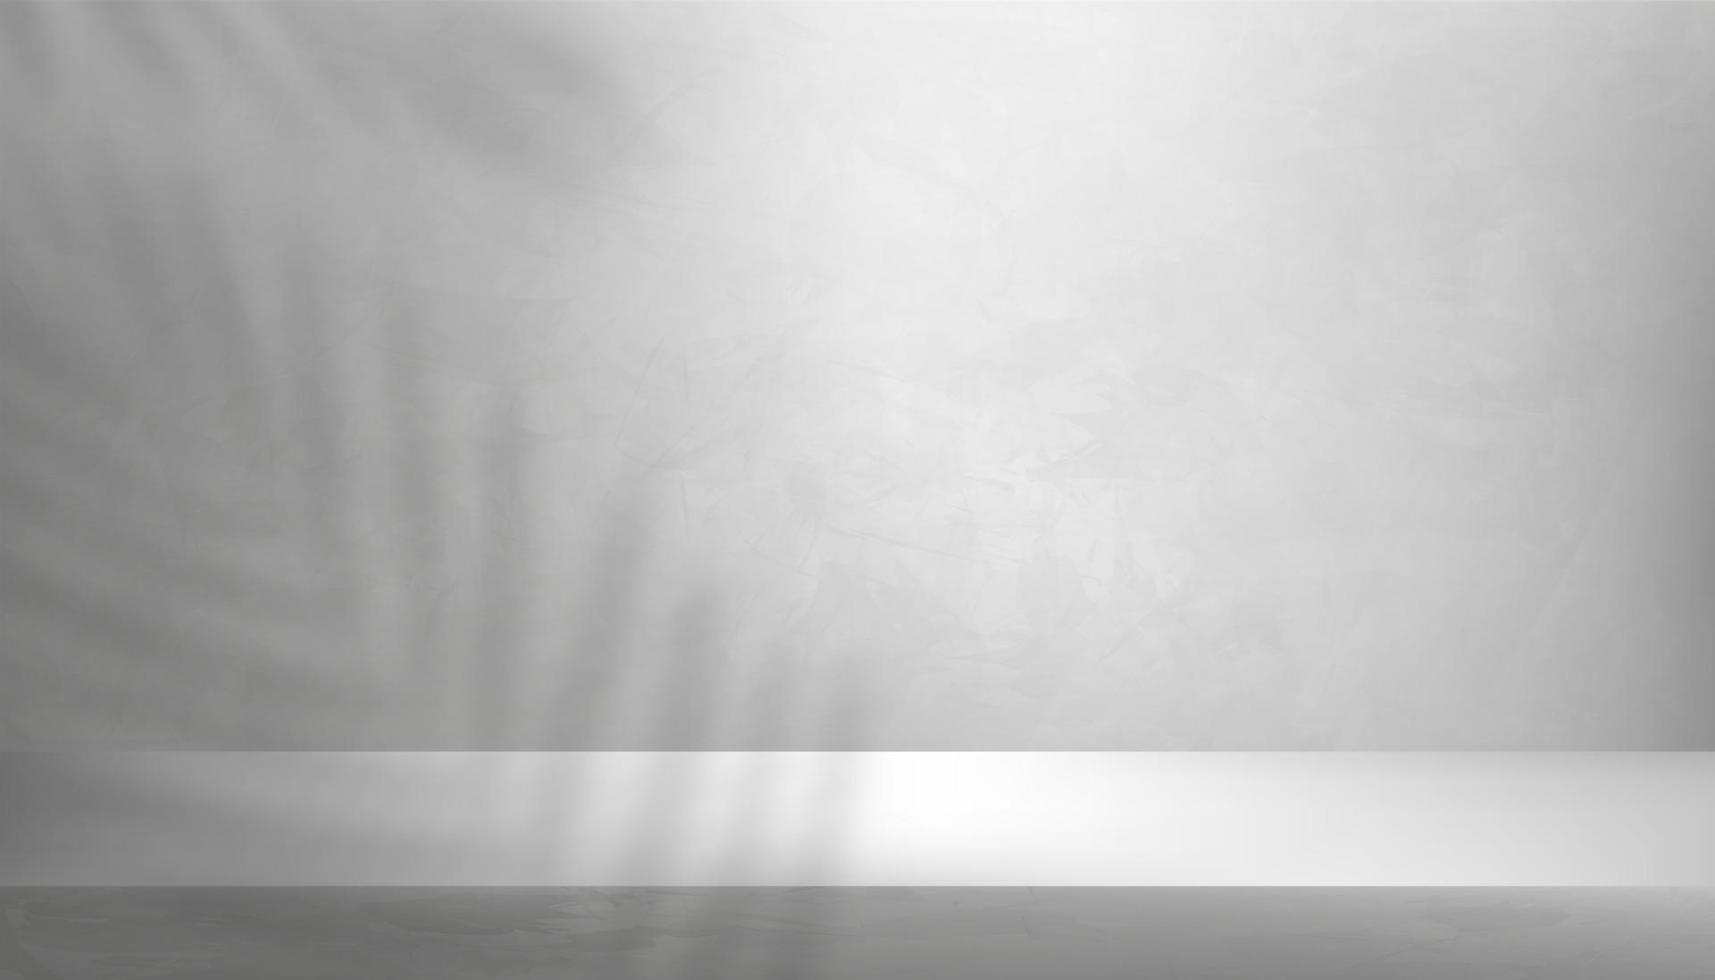 Mauer grau Beton Textur Hintergrund mit Palme verlassen Schatten Überzug, grau Zement Boden, Tropen Blatt Silhouette auf geknackt Oberfläche Muster, Hintergrund Hintergrund 3d Anzeige Studio zum Produkt Präsentation vektor